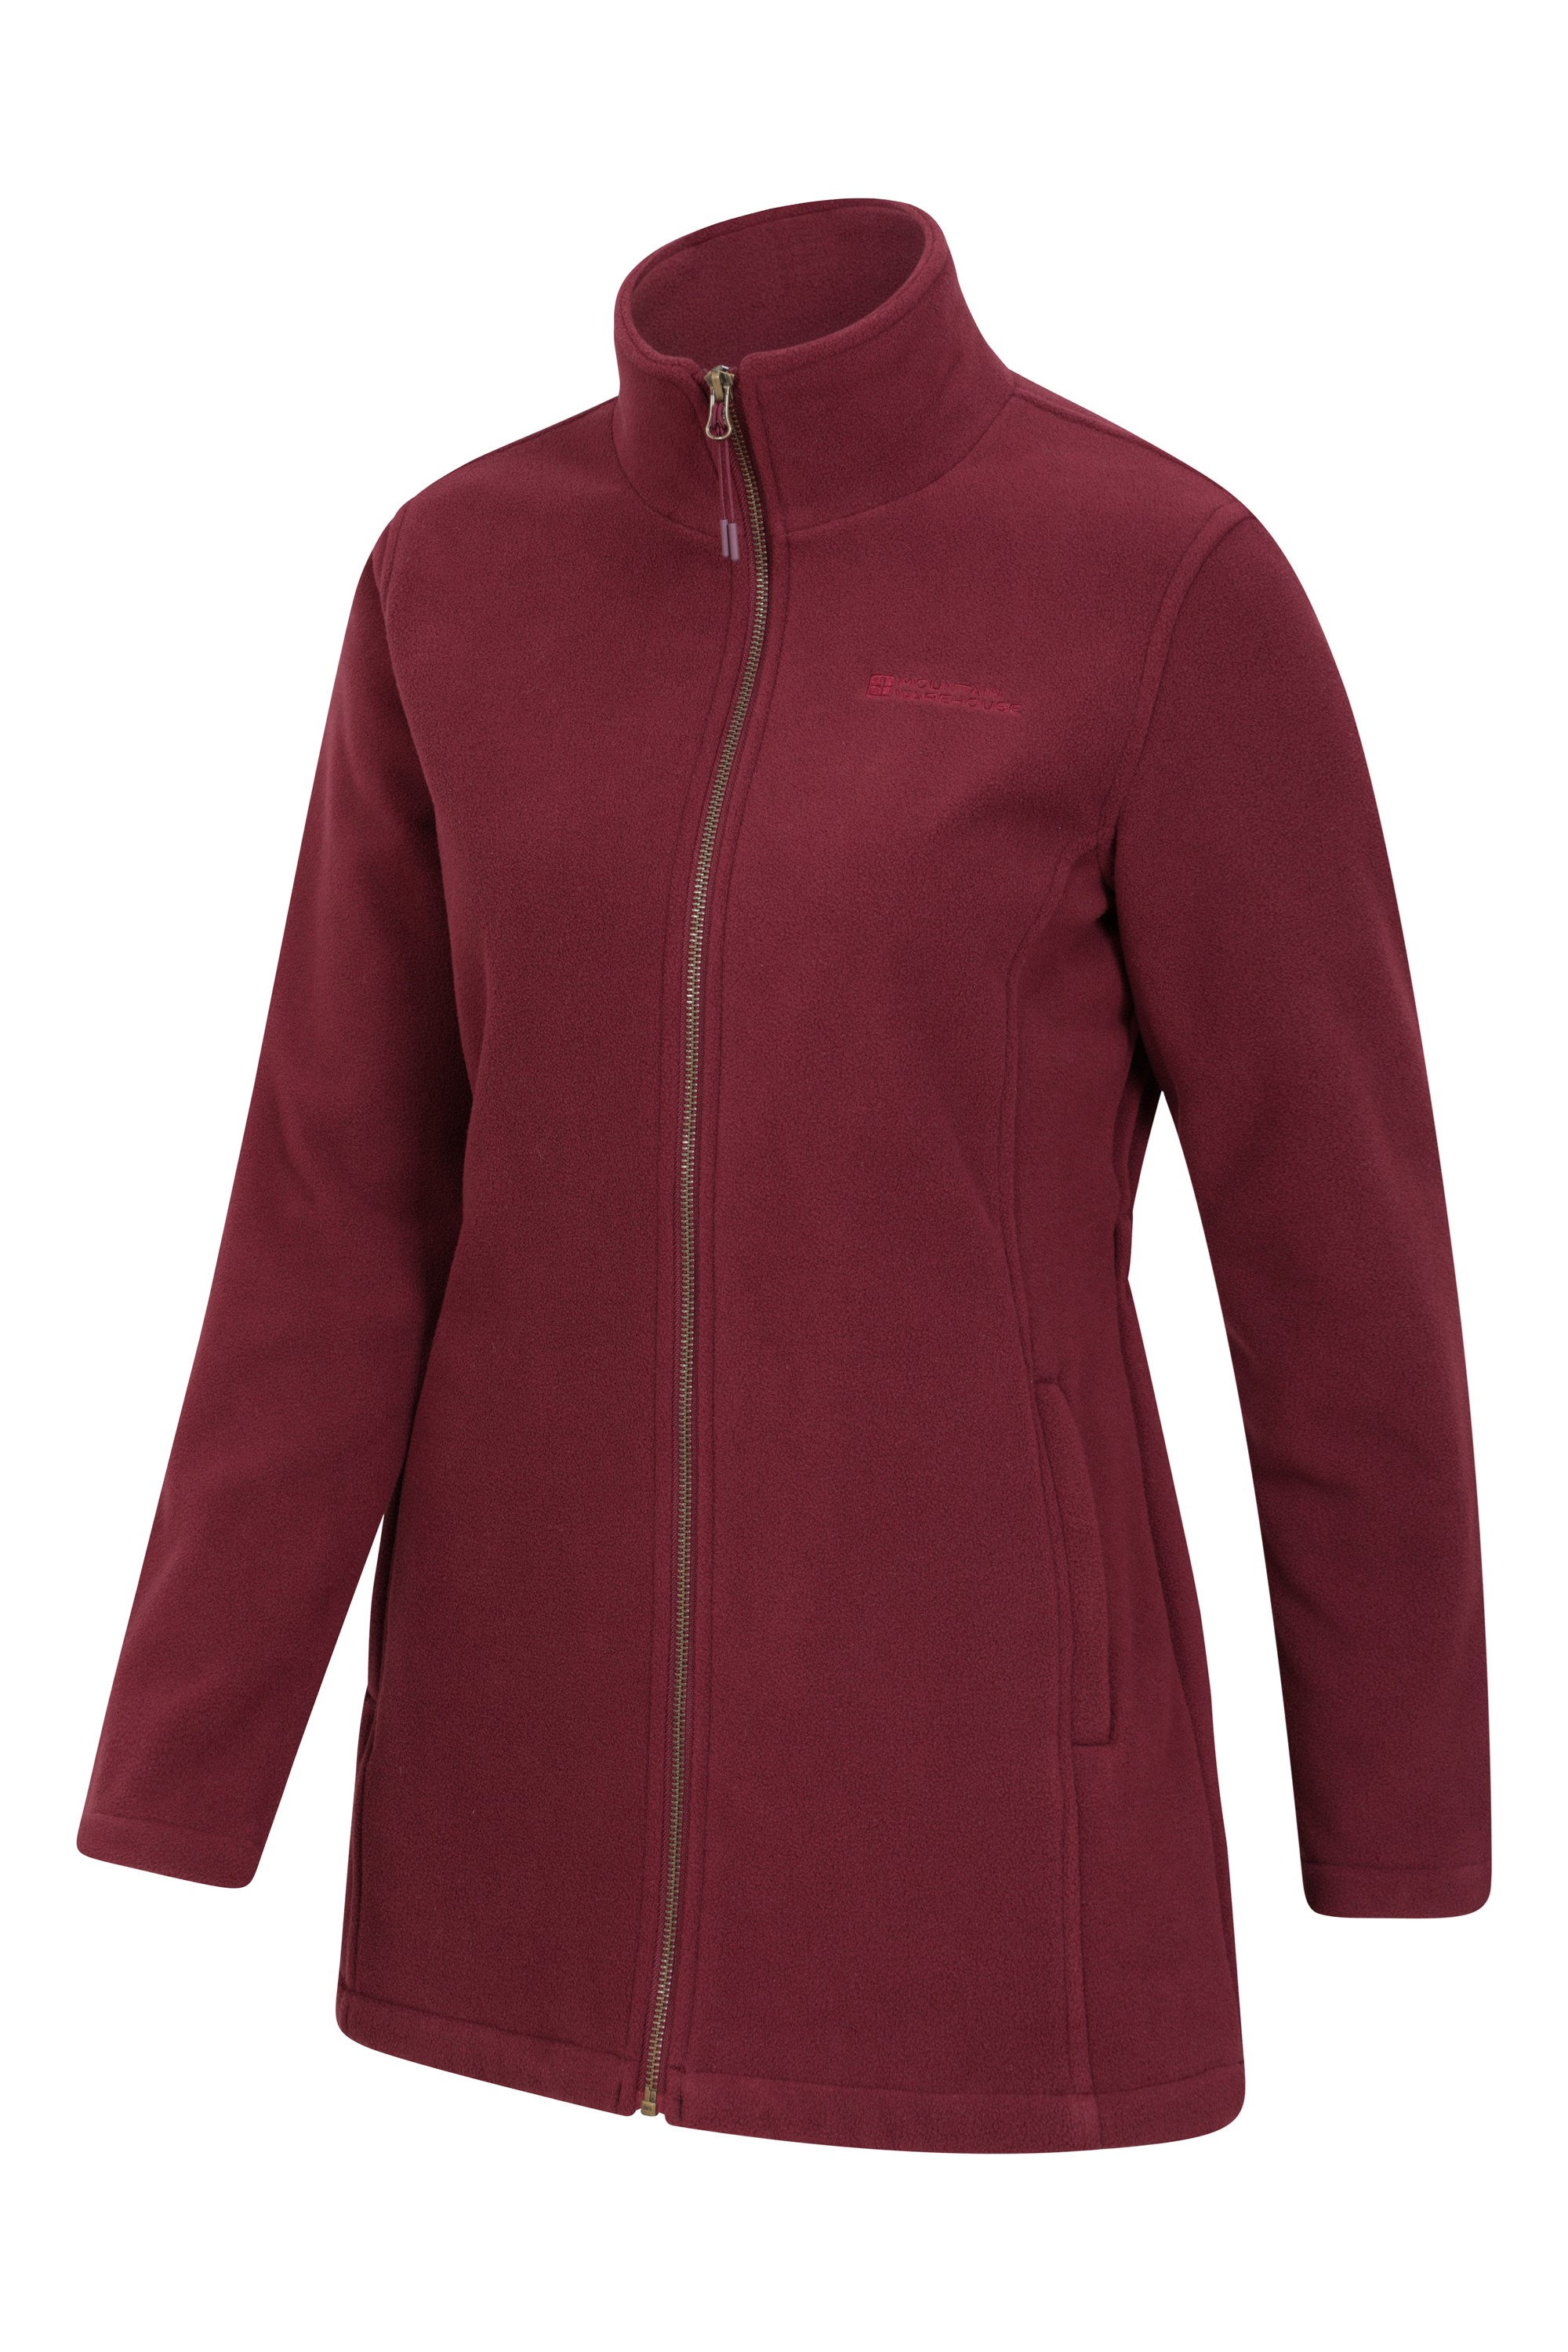 Birch Womens Longline Fleece Jacket | Mountain Warehouse GB